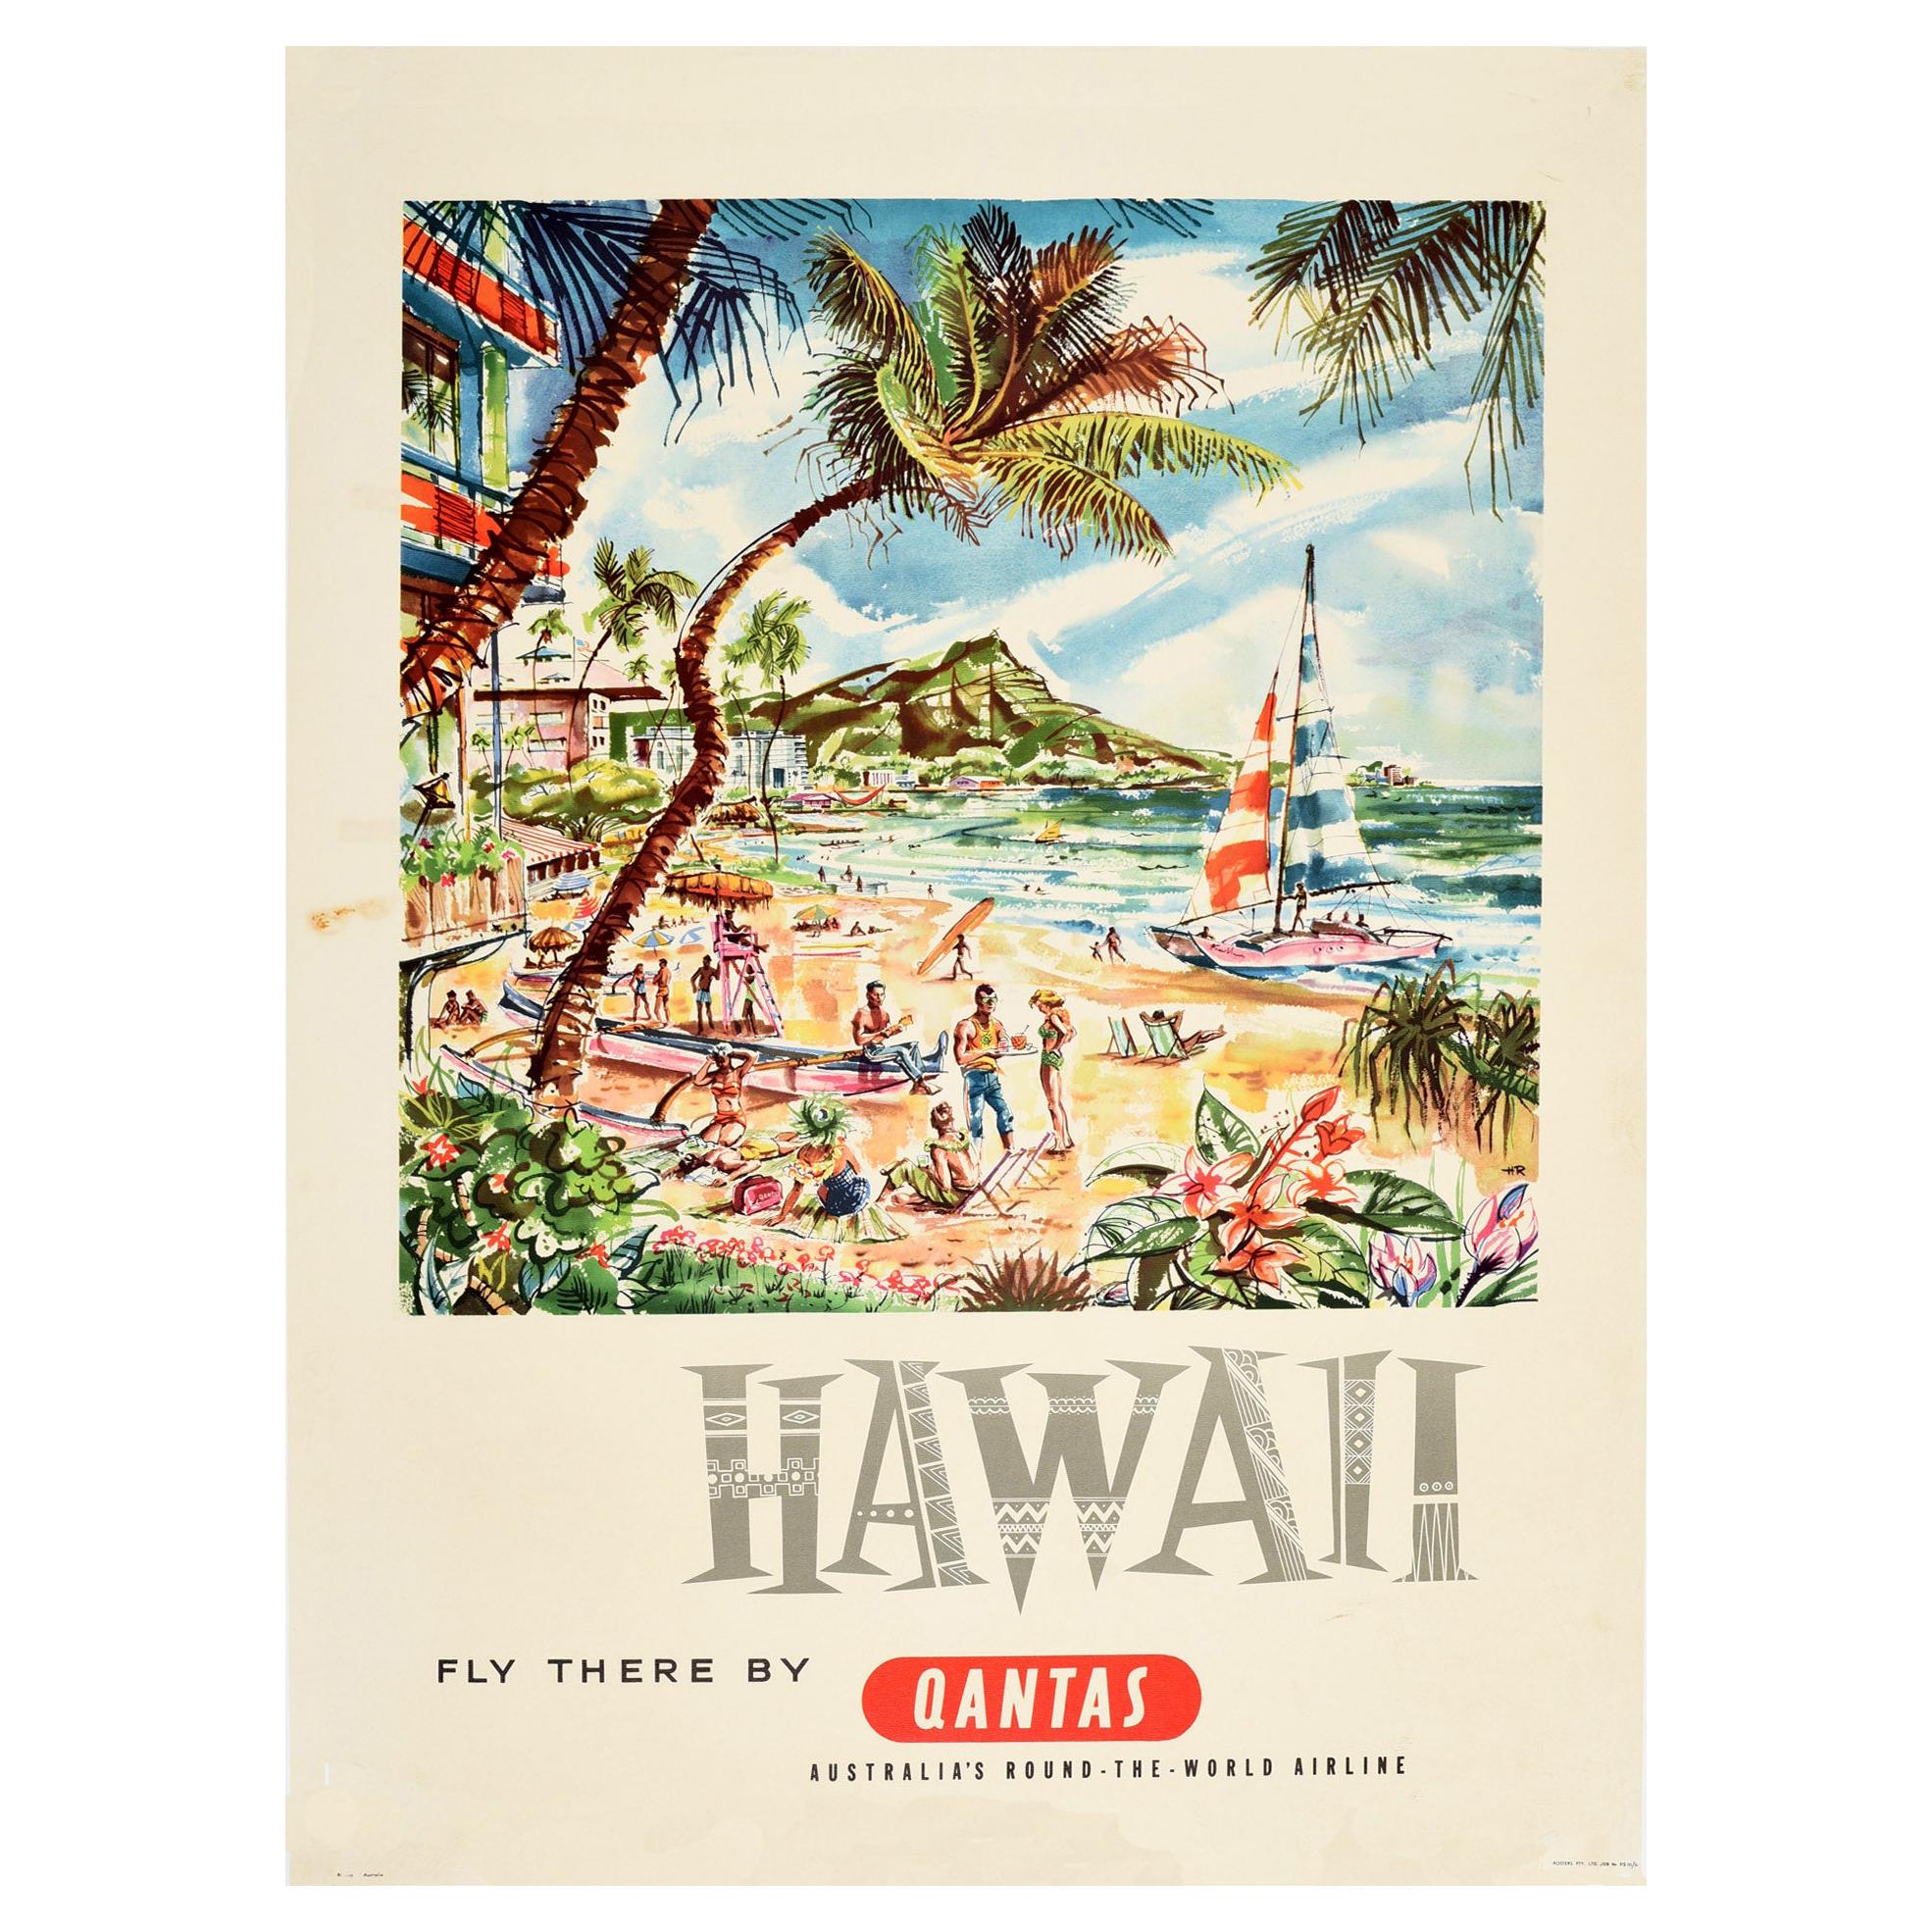 Original Vintage Travel Poster Hawaii Fly There by Qantas Waikiki Beach Sailing